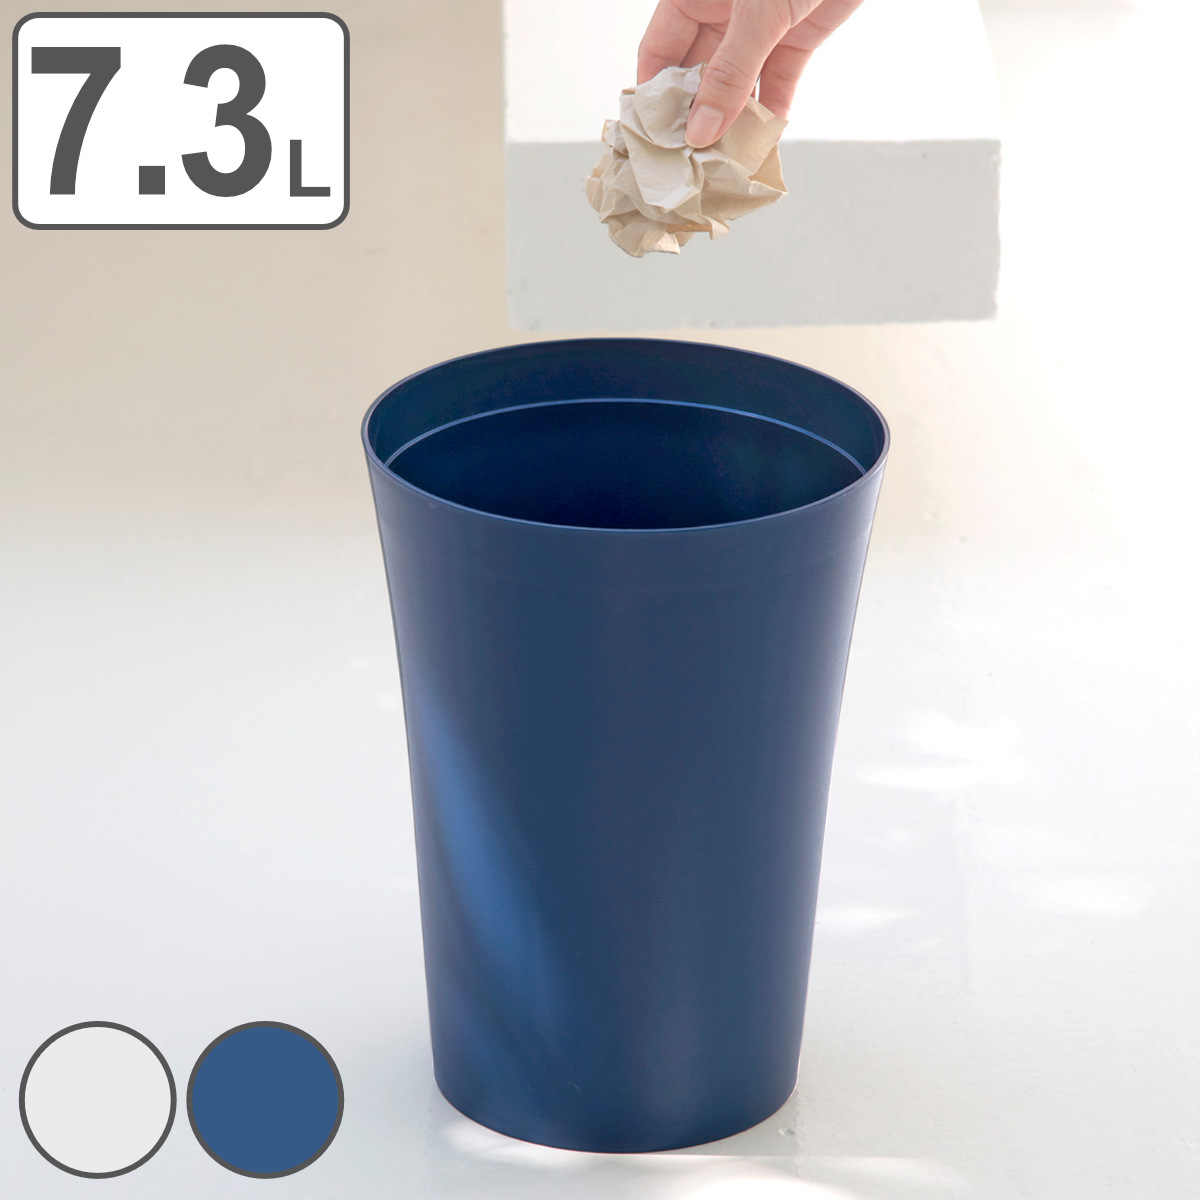 ゴミ箱 7.3L 環境にやさしいくずいれ 丸型